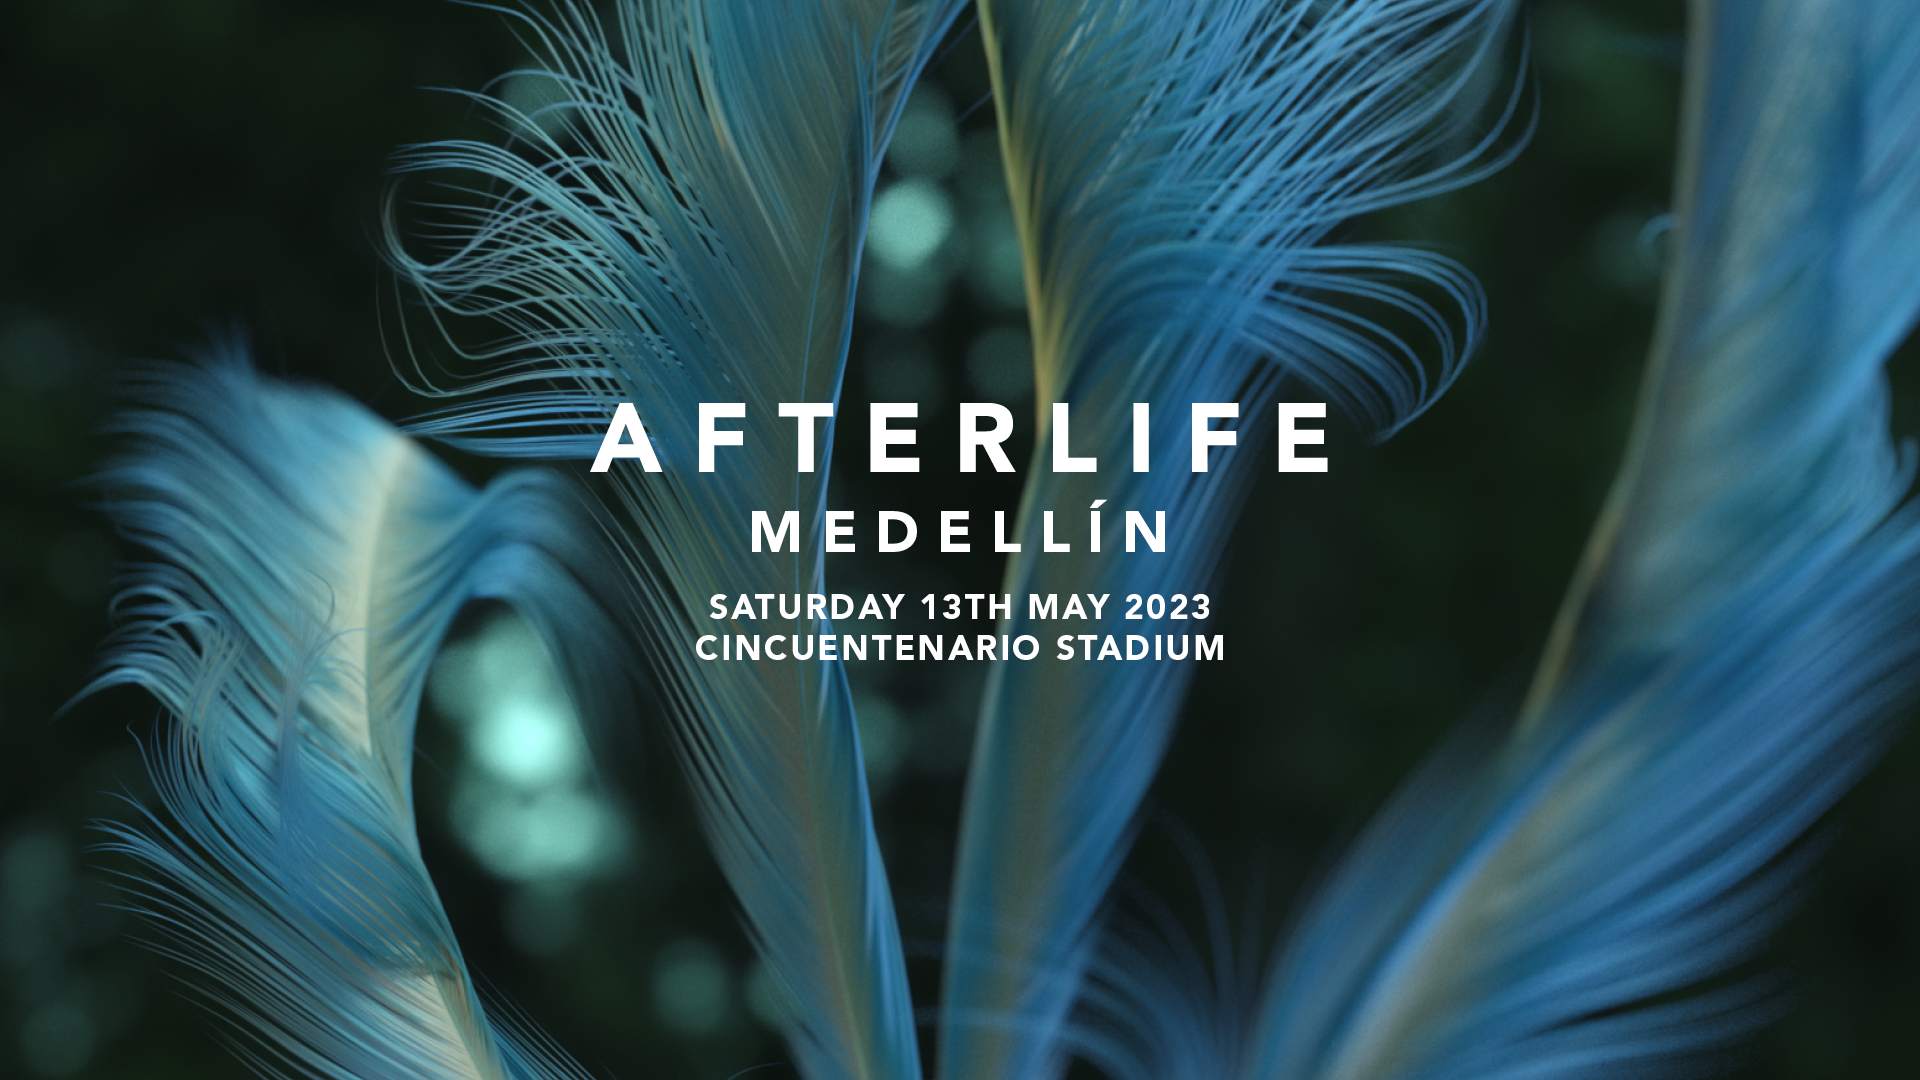 Afterlife Medellín 2023 - フライヤー表